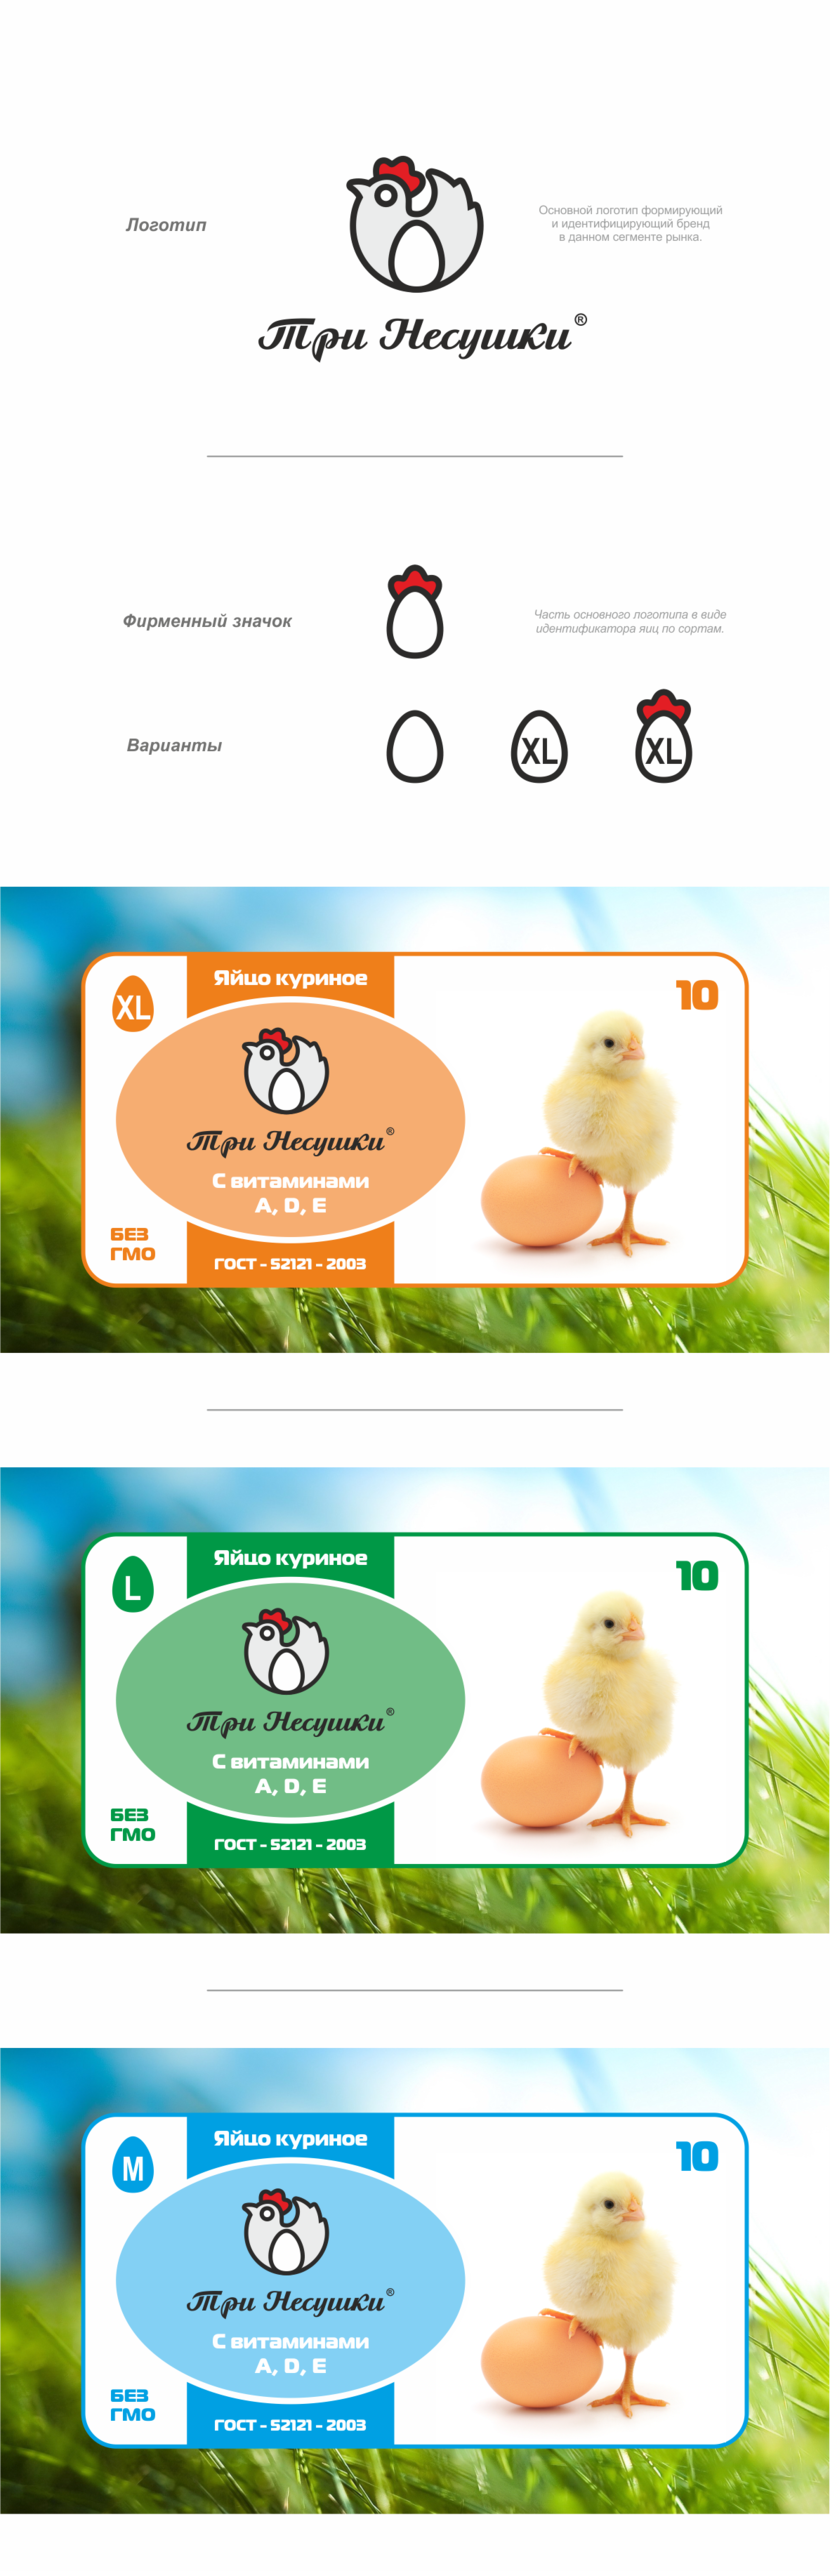 + - Разработка логотипа и фирменного стиля для нового бренда куриных яиц "Три несушки"